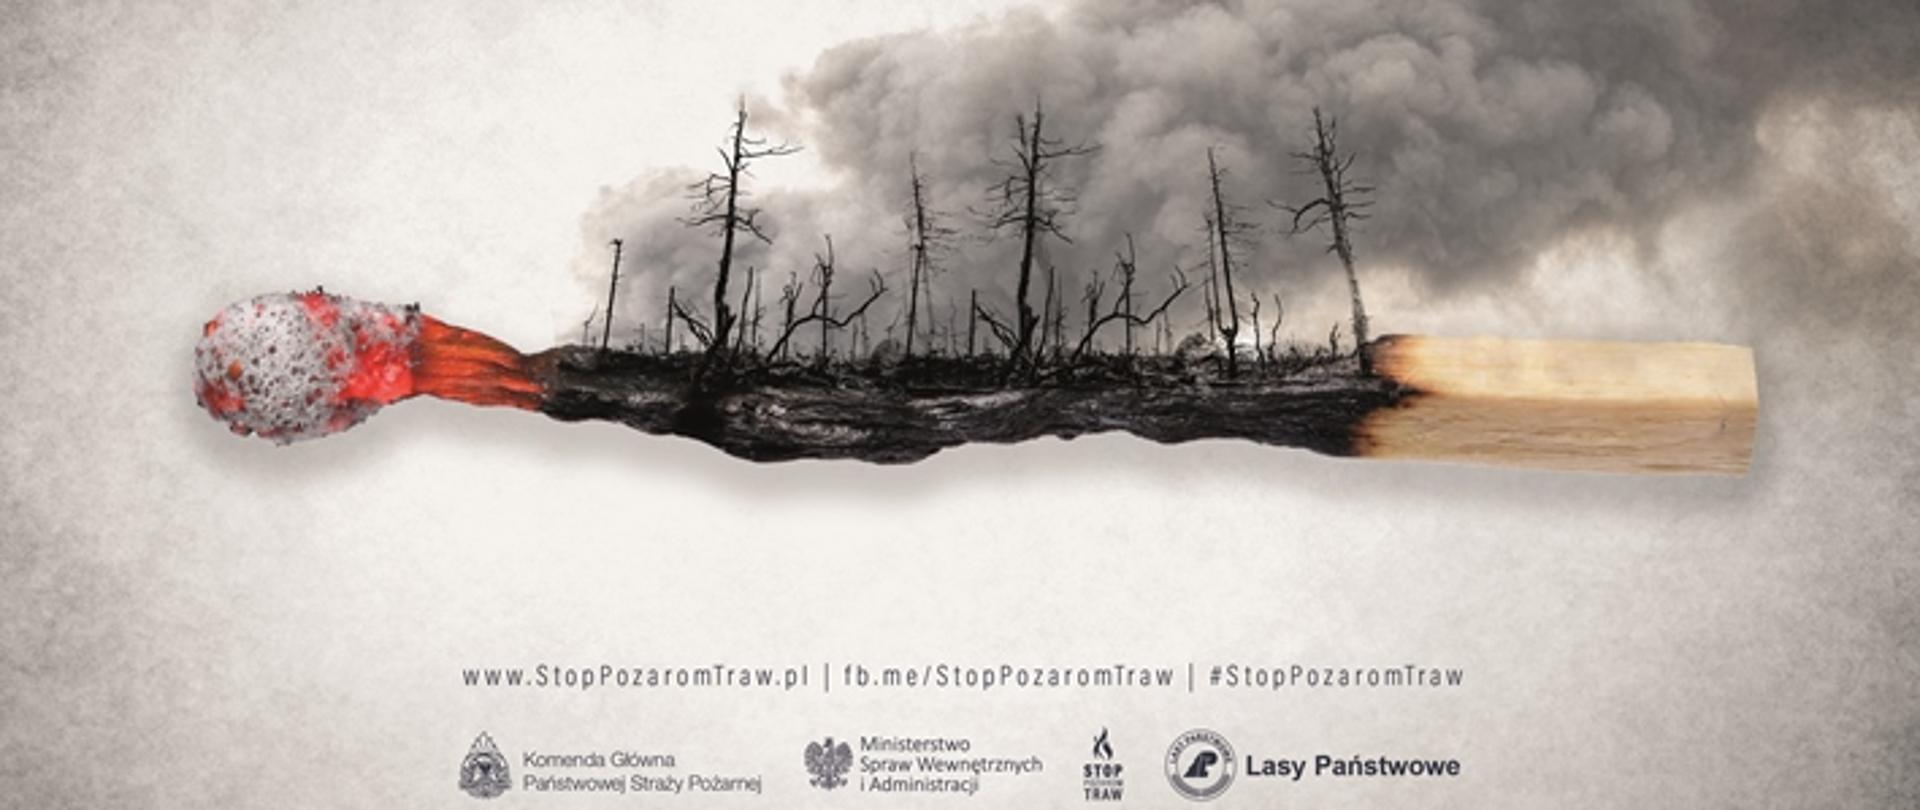 Plakat kampanii Stop pożarom traw